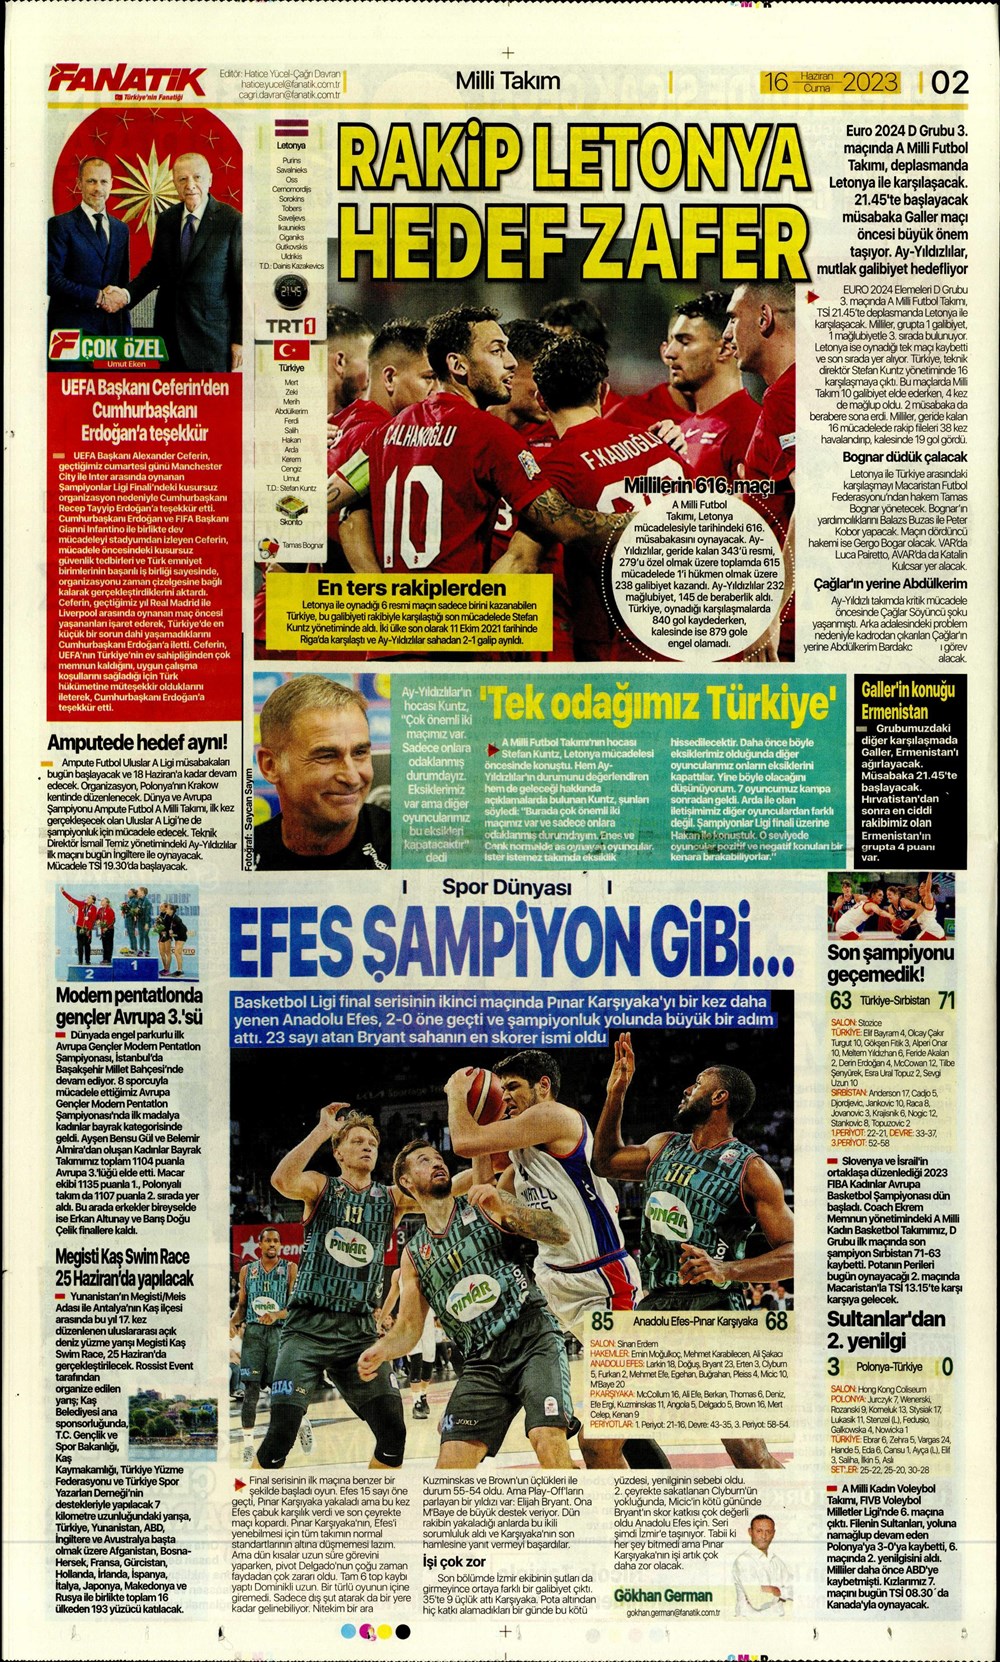 "Dzeko çok yakın" Sporun manşetleri (16 Haziran 2023)  - 4. Foto